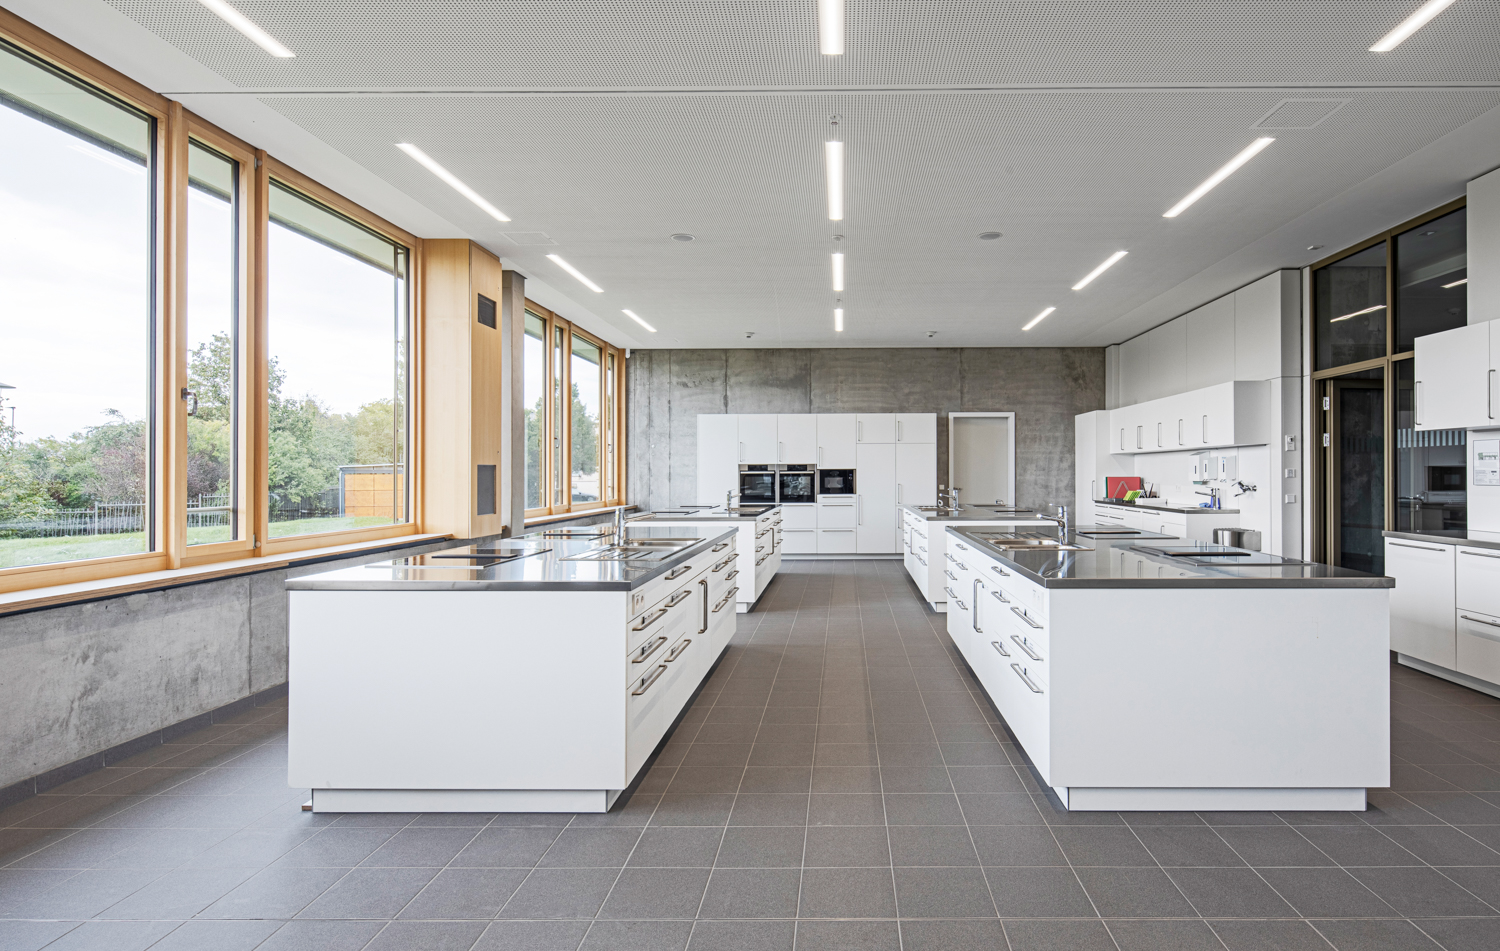 Interiorfotografie und Küche von einer Beruflichen Gymnasium in Bad Krozingen